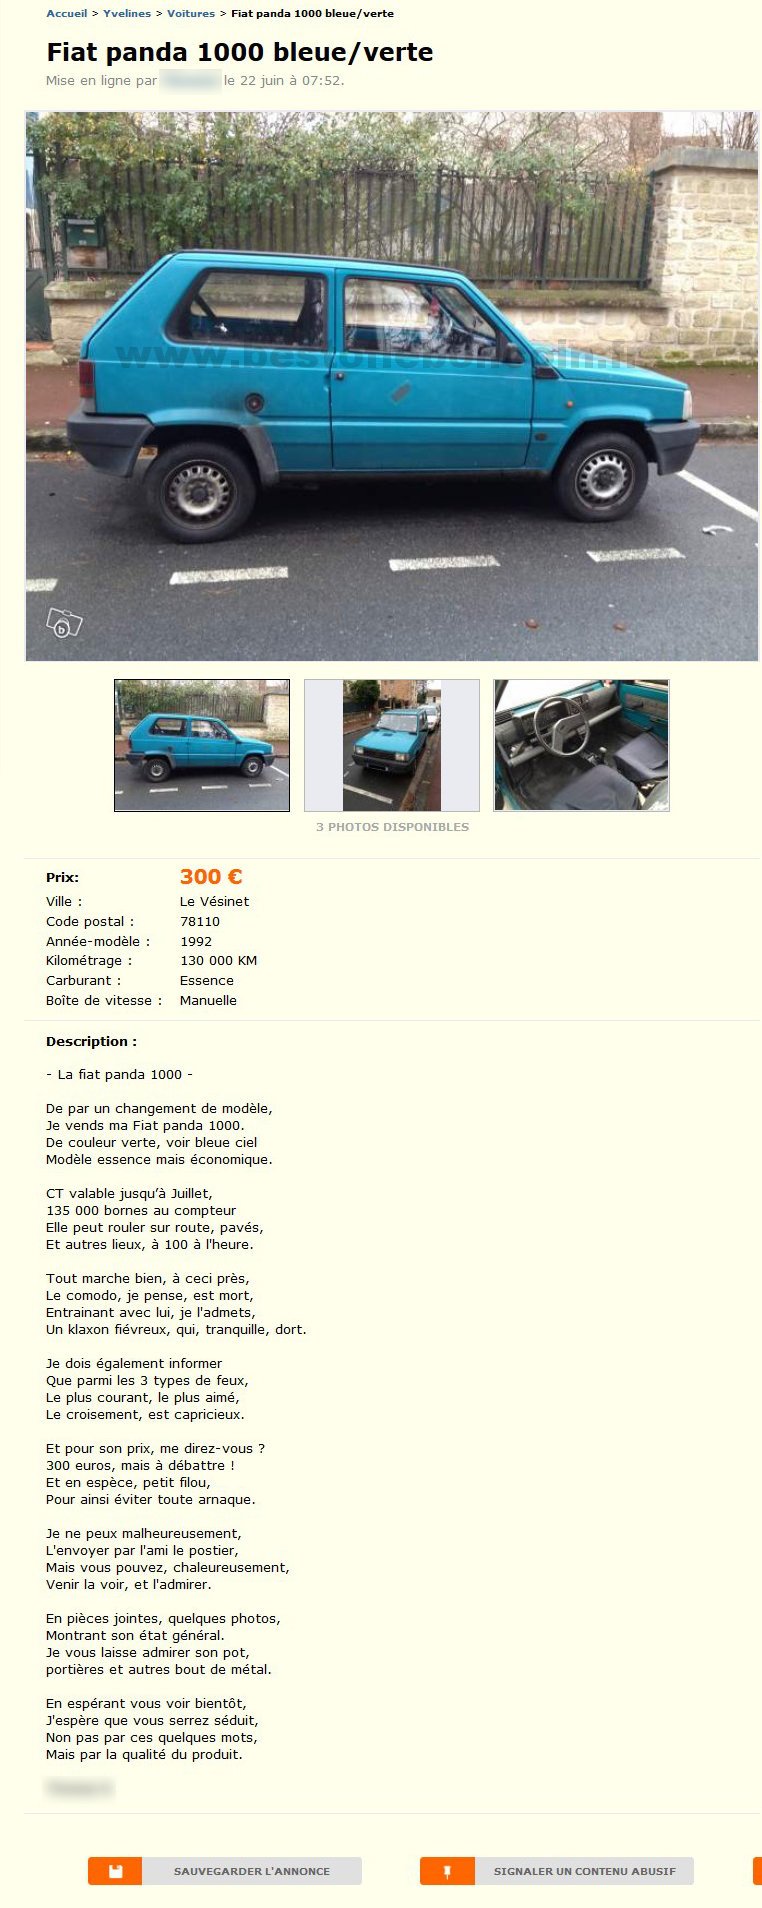 Fiat Panda 1000 Bleue/Verte